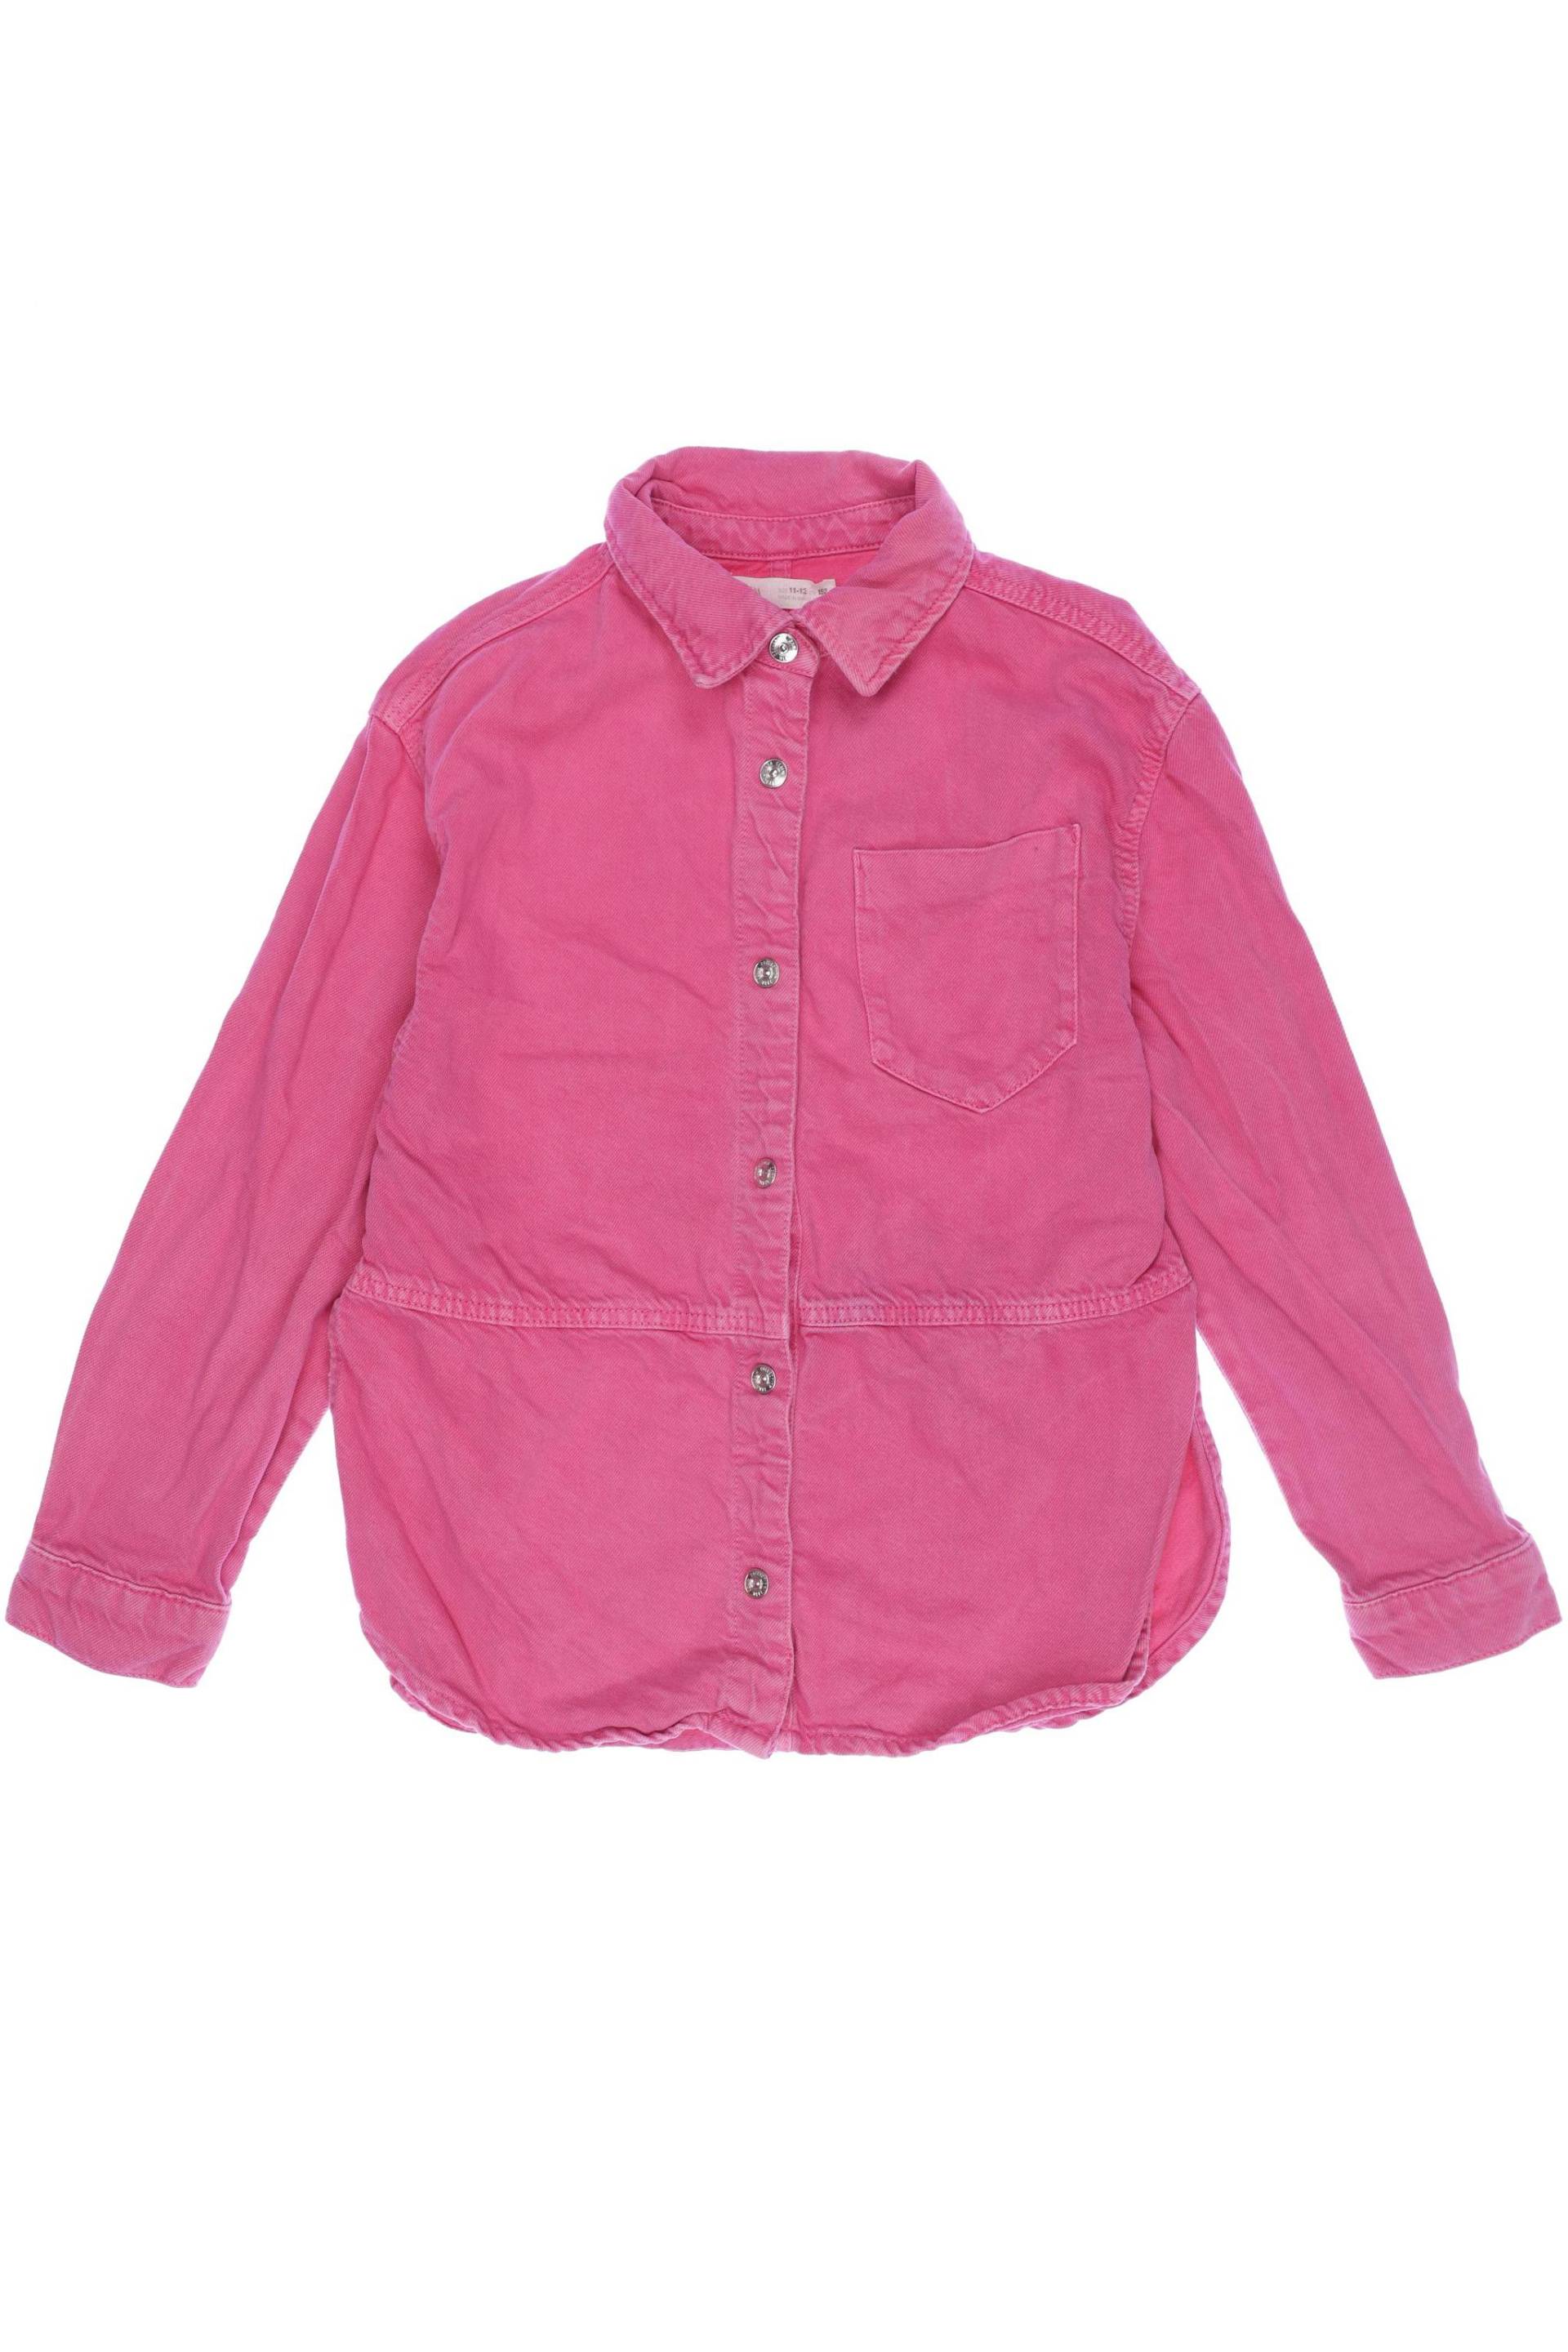 Zara Damen Jacke, pink, Gr. 152 von ZARA